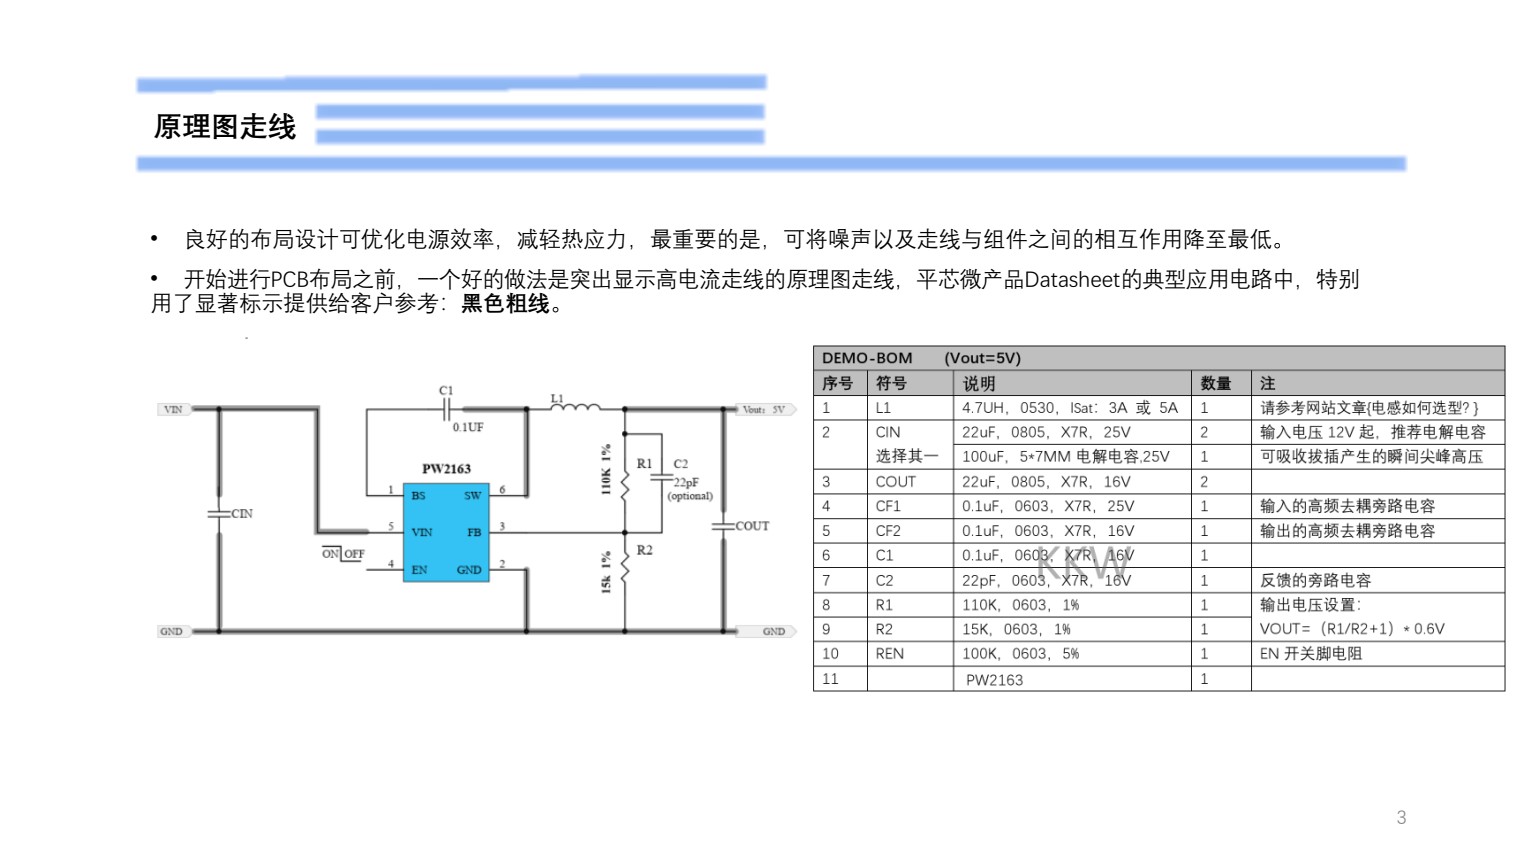 9V降压5V,最大3A供电的PCB设计过程截图PW2163